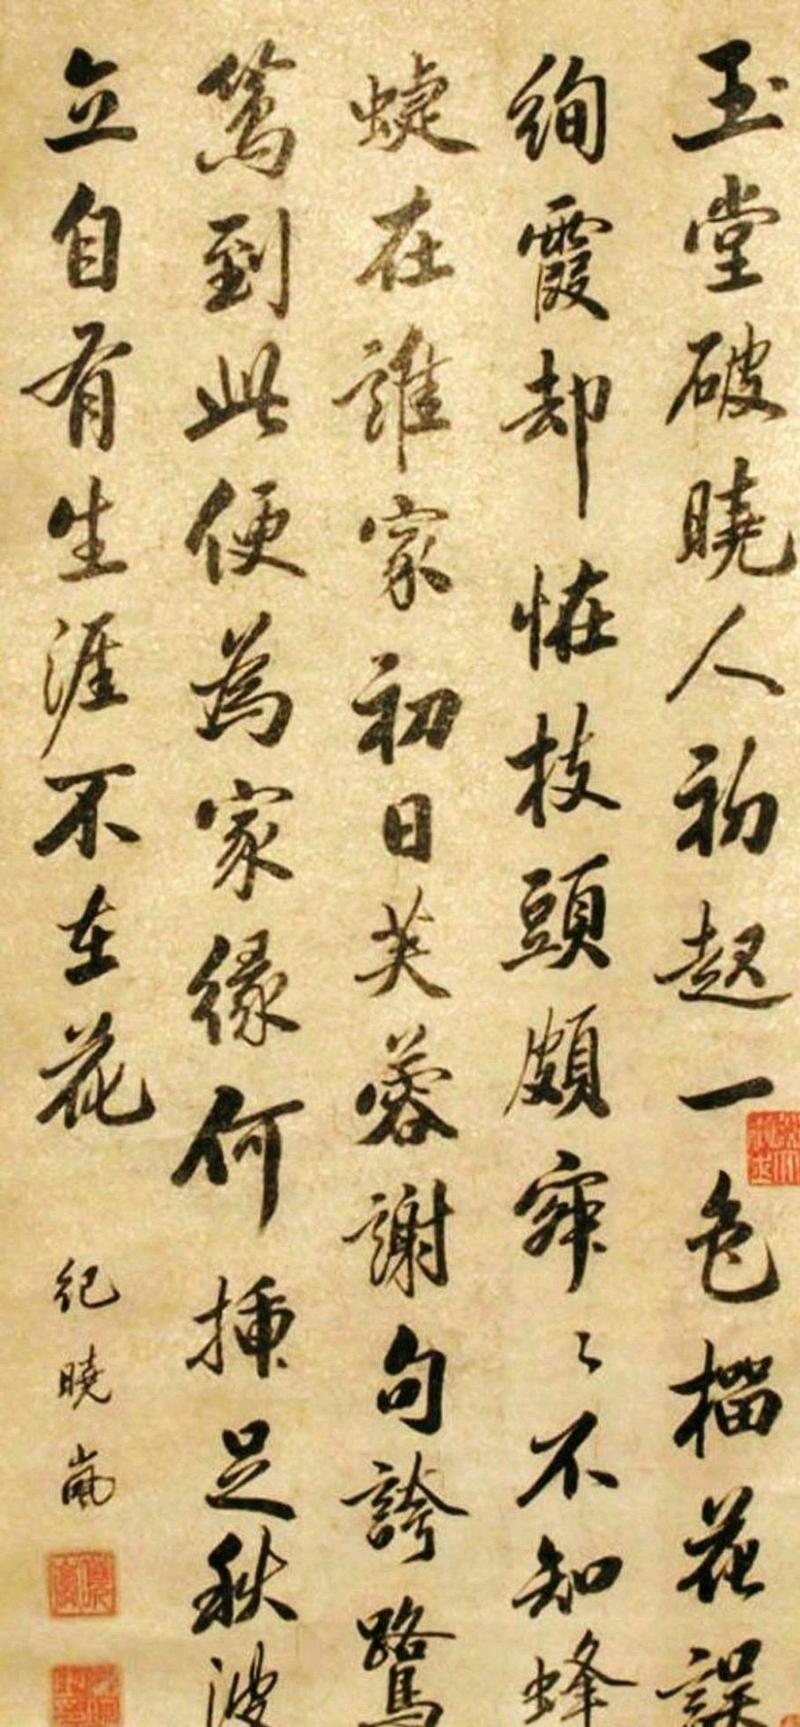 纪晓岚是朝中重臣,政绩和文学成就掩盖了他的书法,他也是书法家